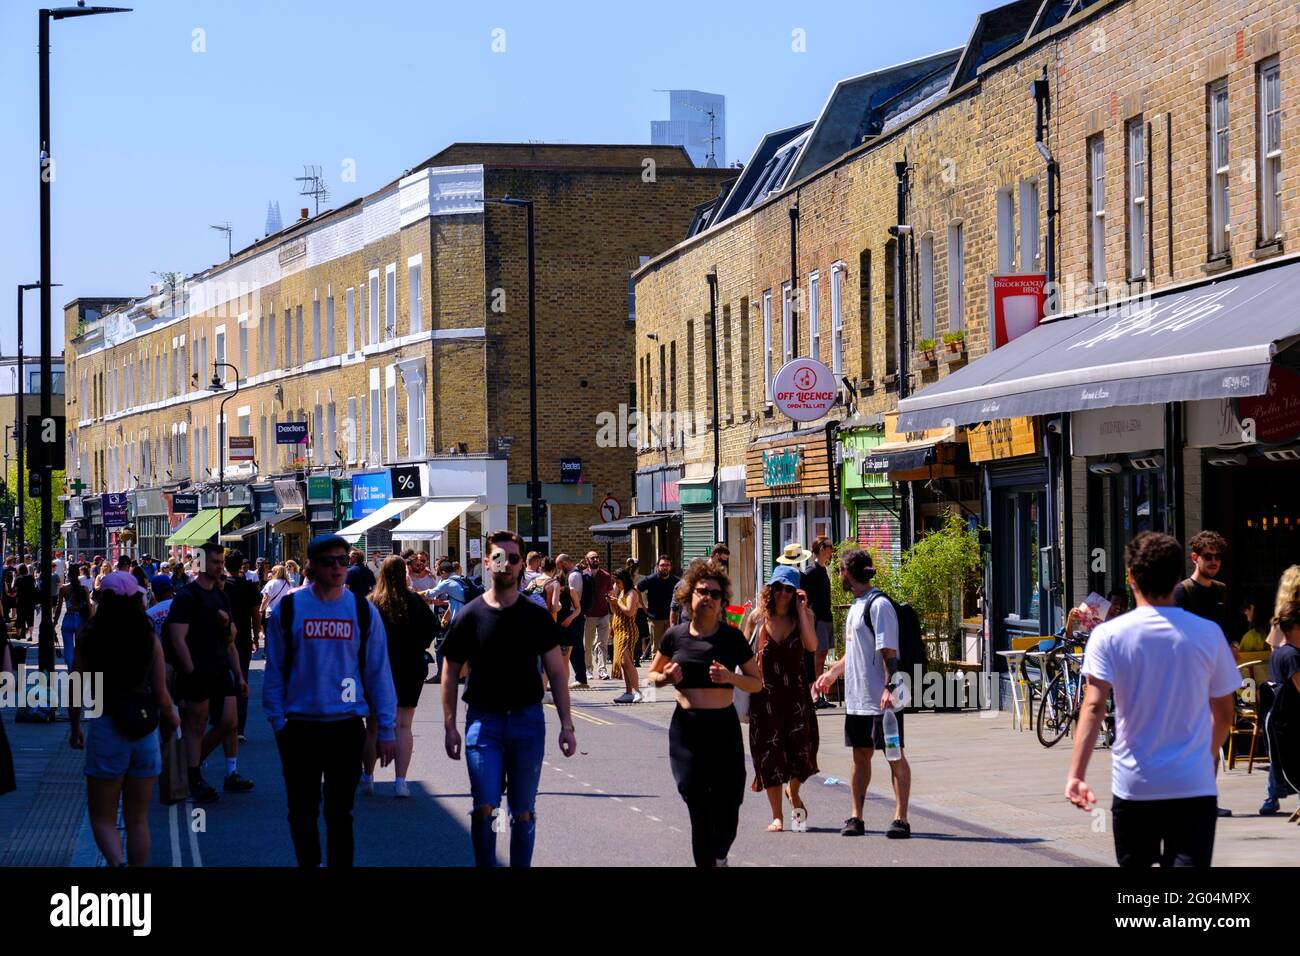 Le persone godono di una calda giornata estiva dopo che le restrizioni di blocco di covi-19 sono state revocate e l'economia sta aprendo, Broadway Market, Londra, Regno Unito Foto Stock